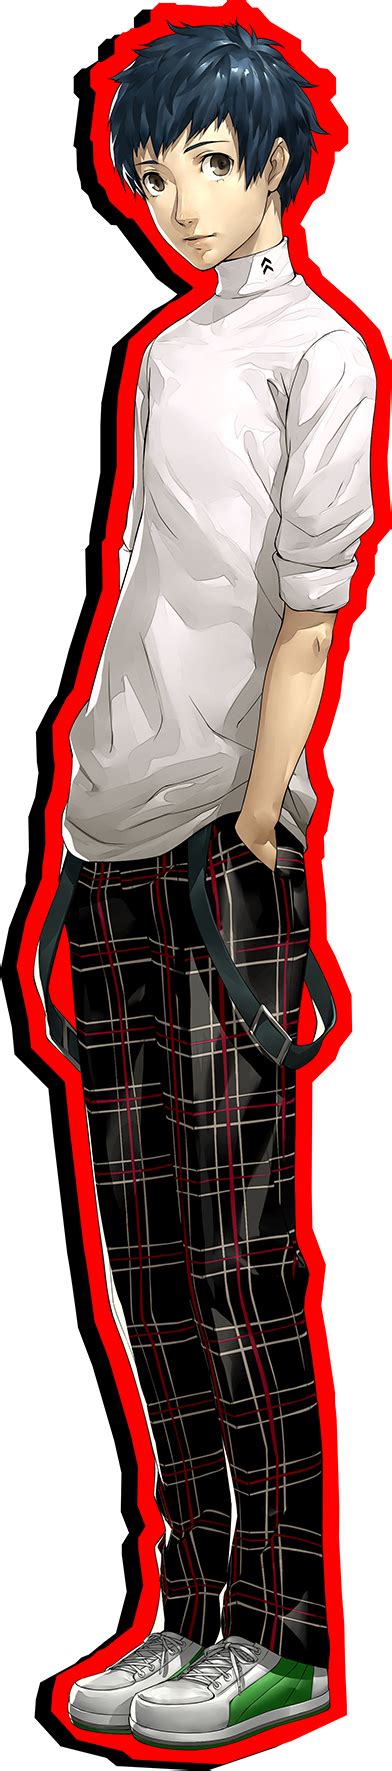 Persona 5 Yuuki Mishima Confidant